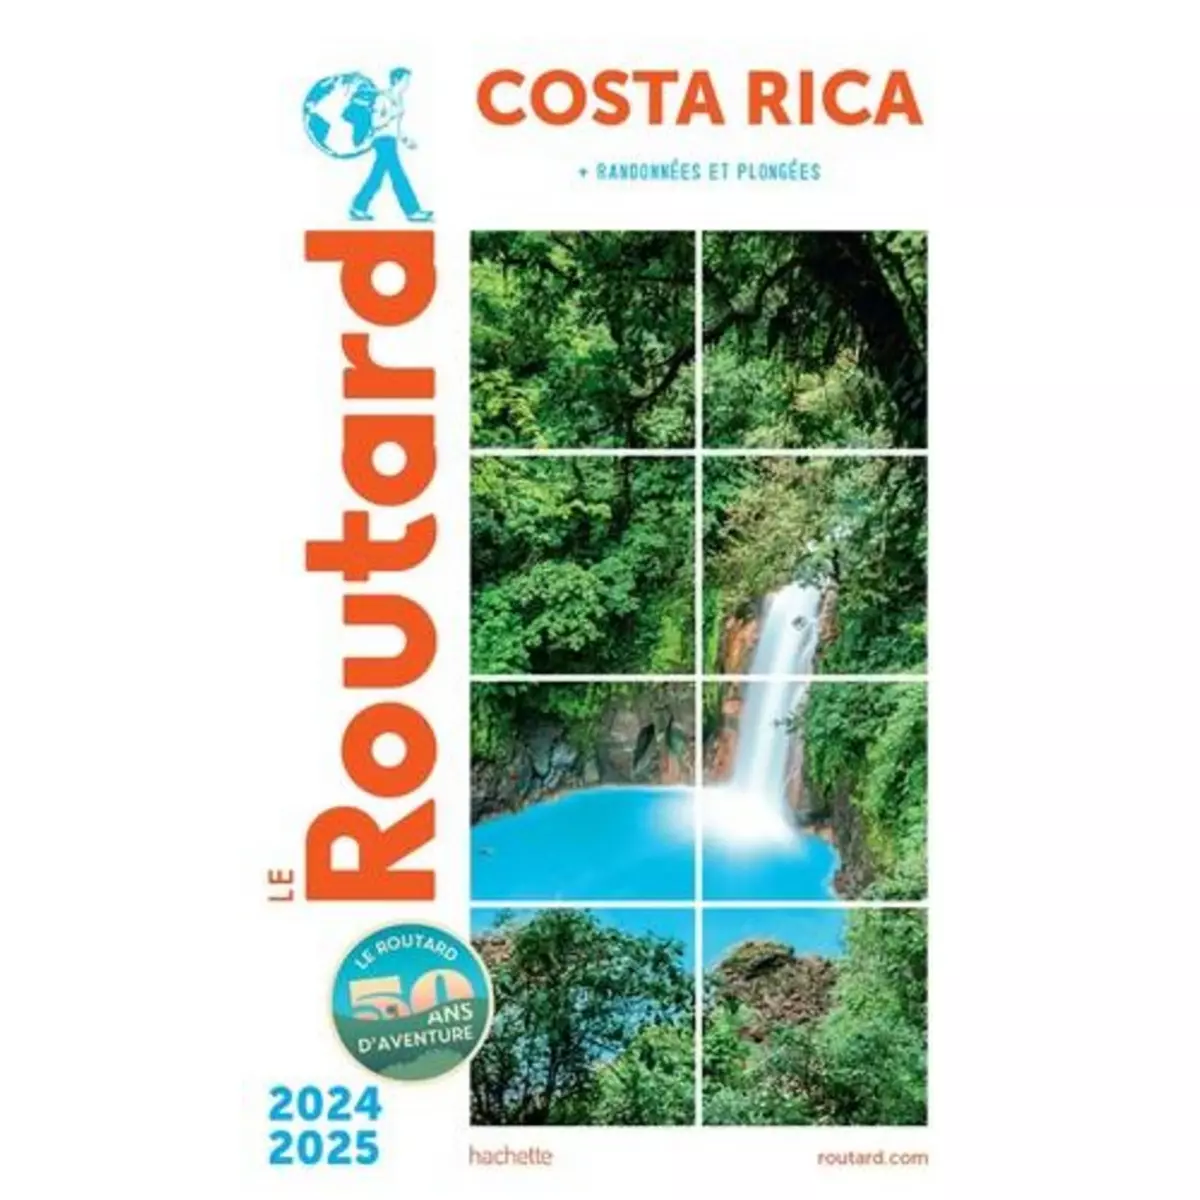  COSTA RICA. EDITION 2024-2025, Le Routard